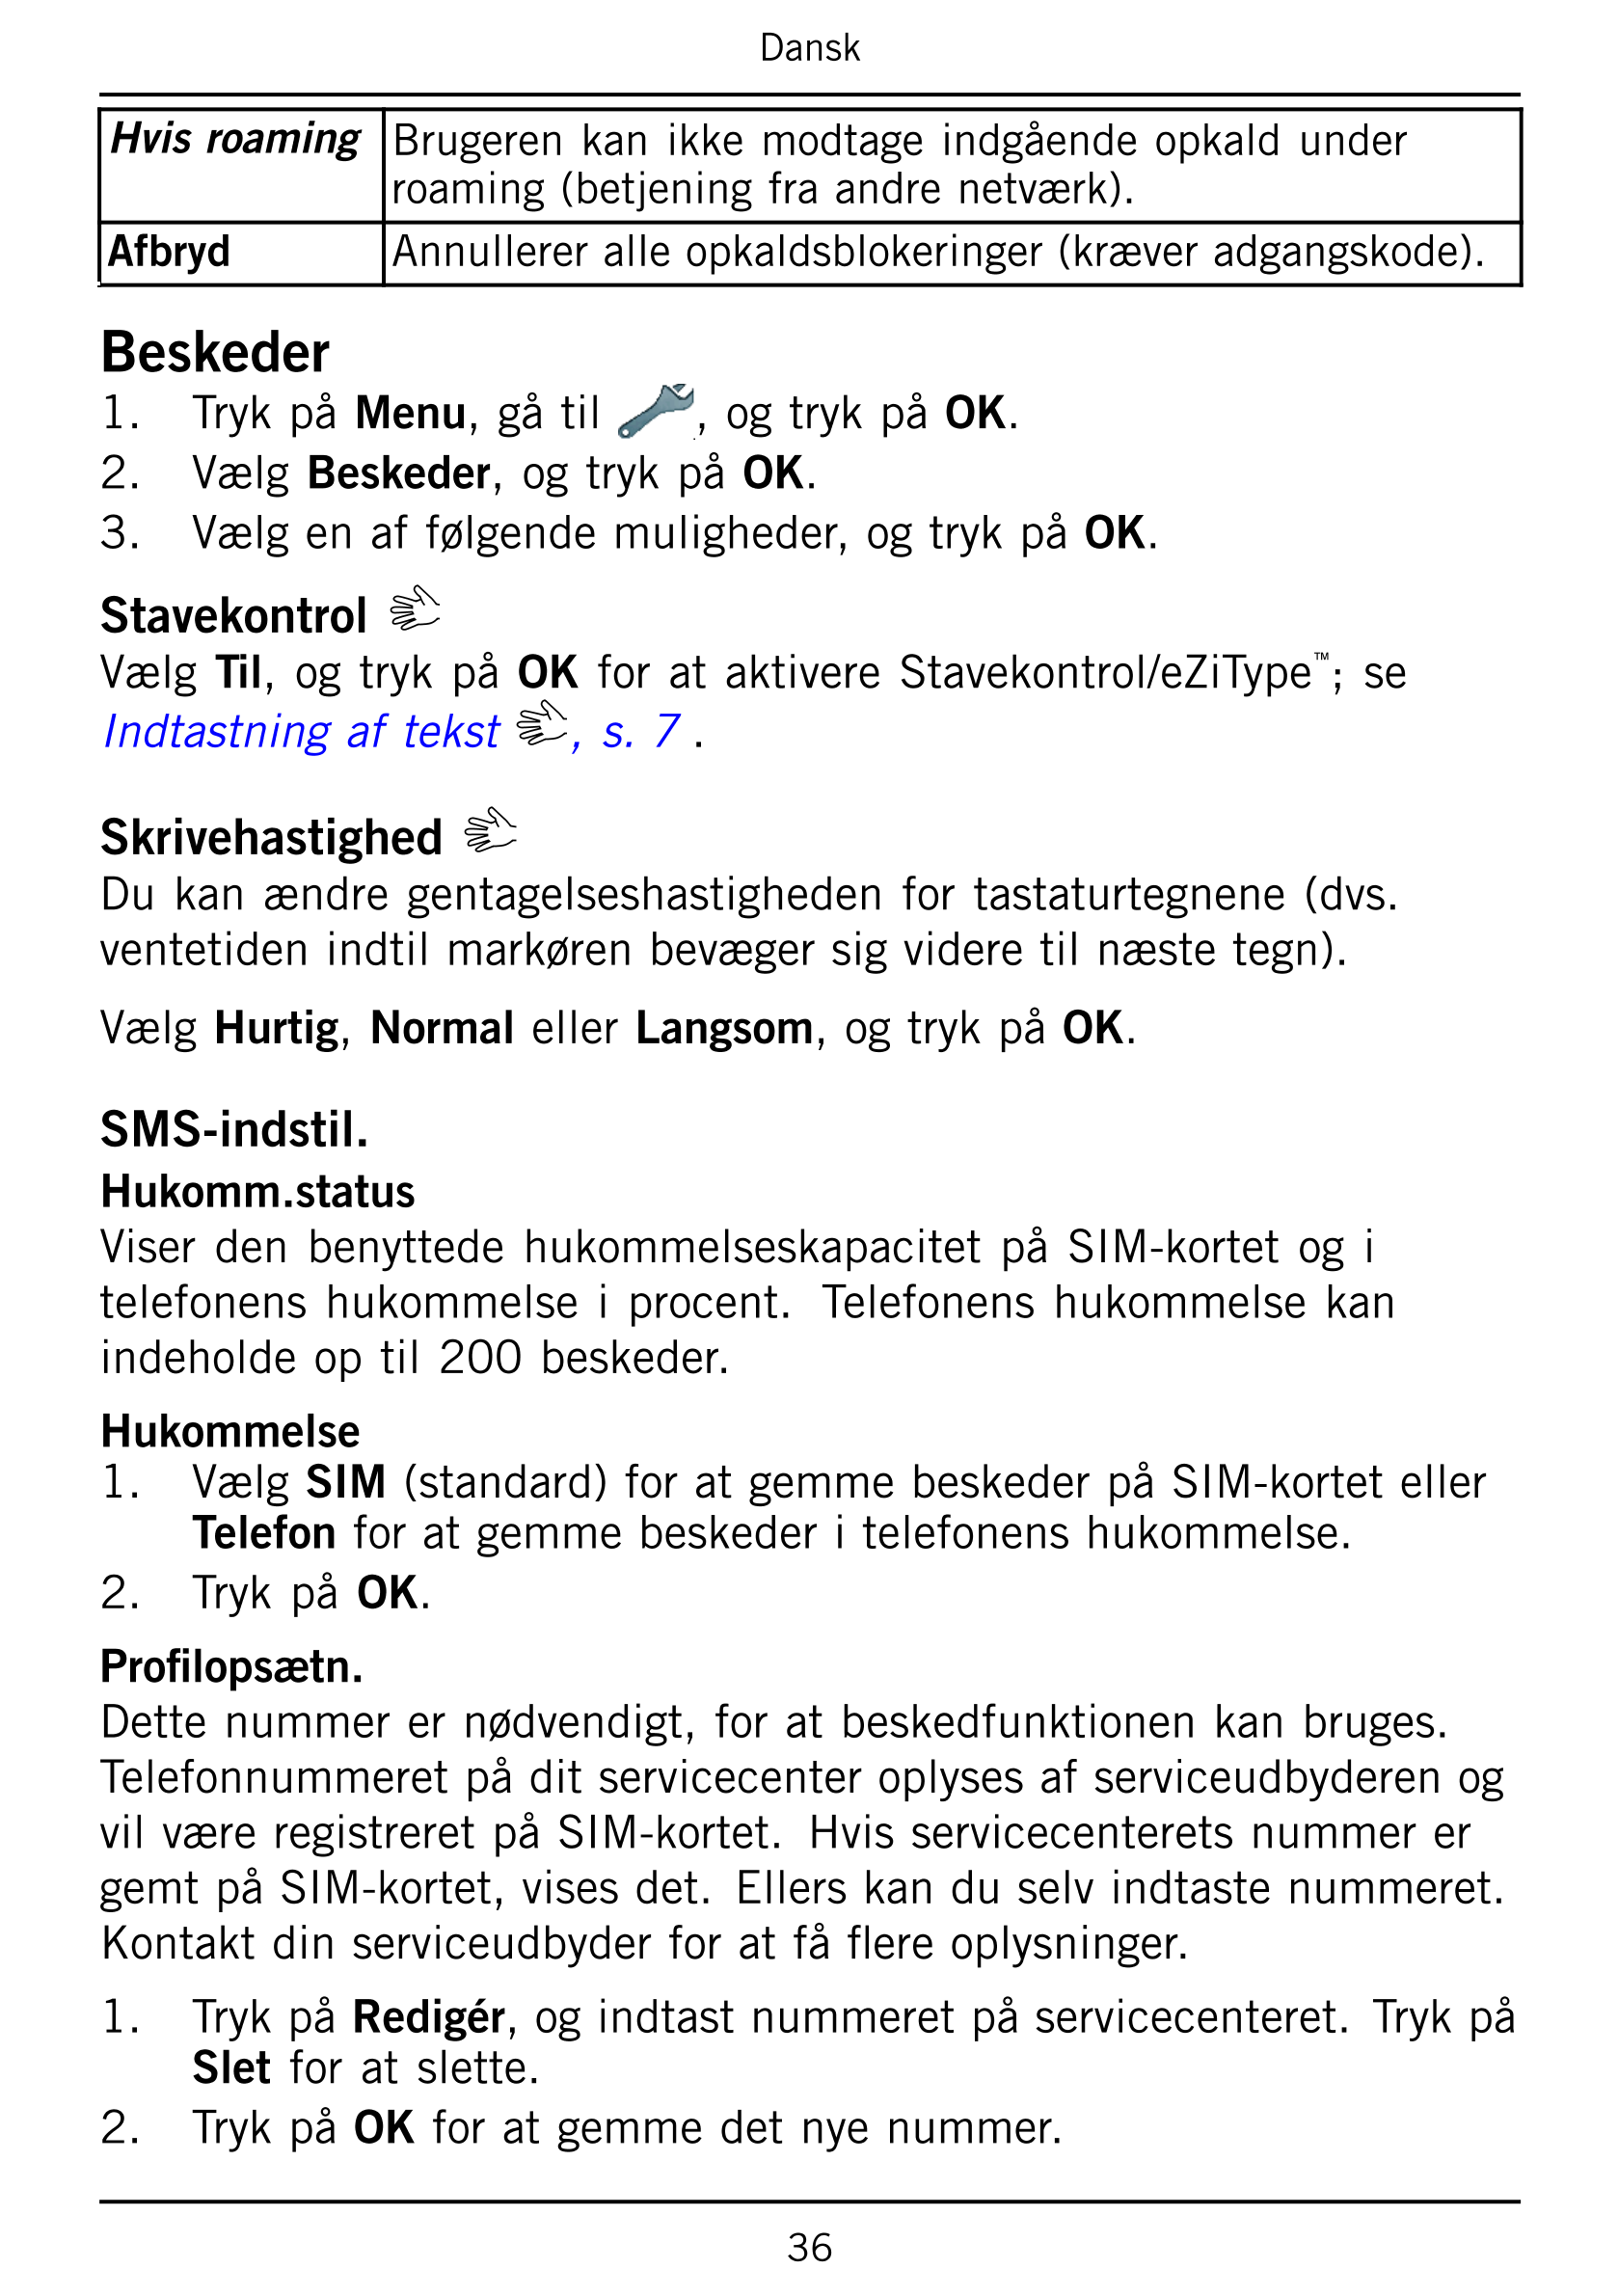 Dansk
Hvis roaming Brugeren kan ikke modtage indgående opkald under
roaming (betjening fra andre netværk).
Afbryd Annullerer all